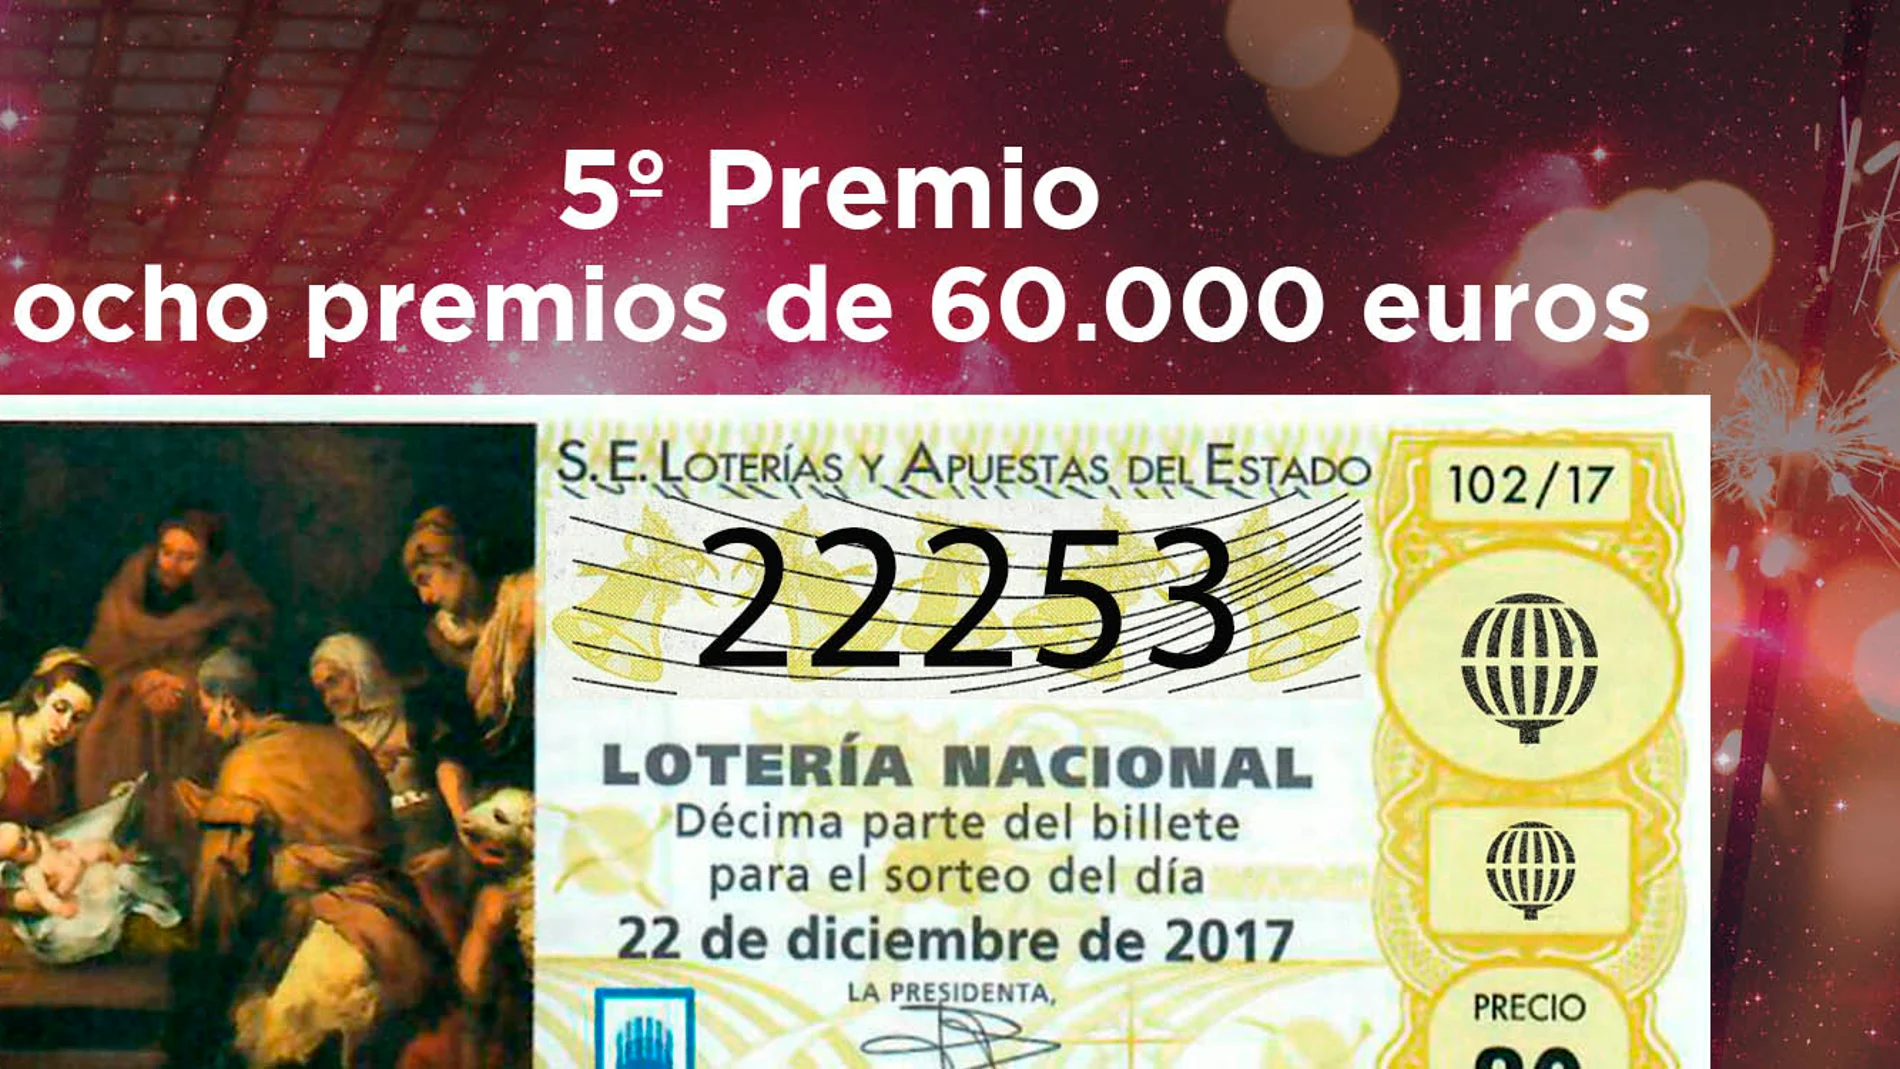 22253, octavo quinto premio del Sorteo de Lotería de Navidad